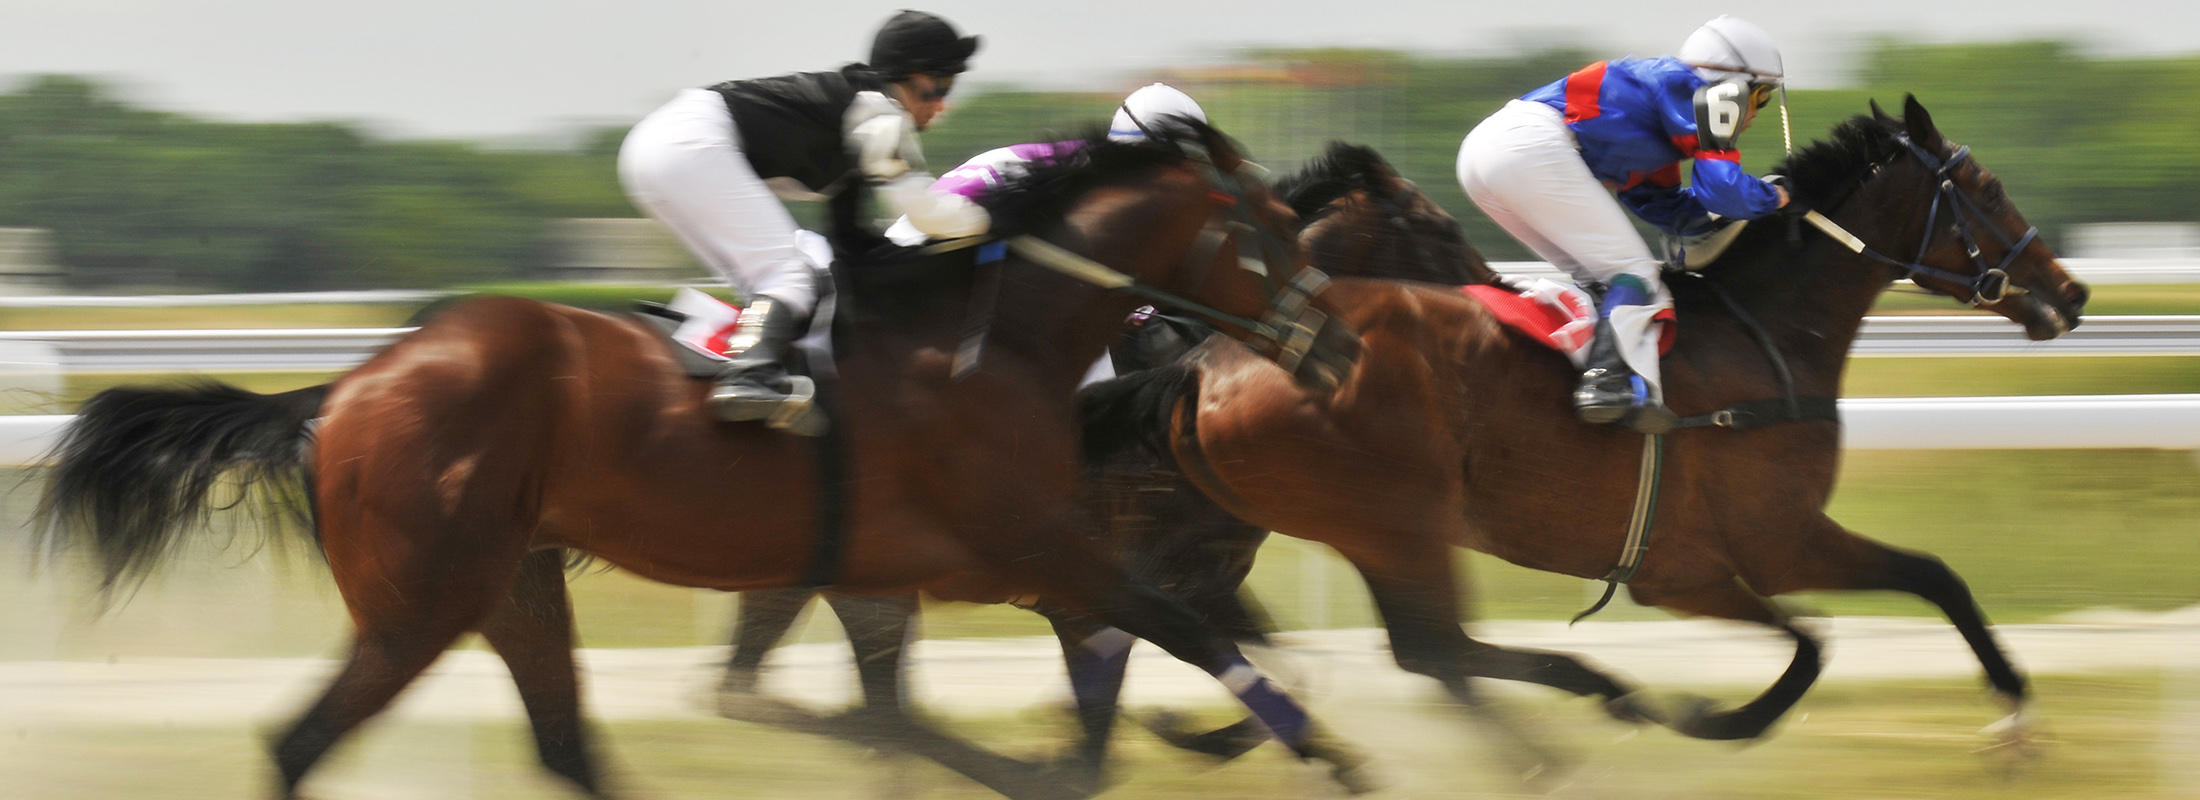 Jockeys et chevaux courant sur un hippodrome